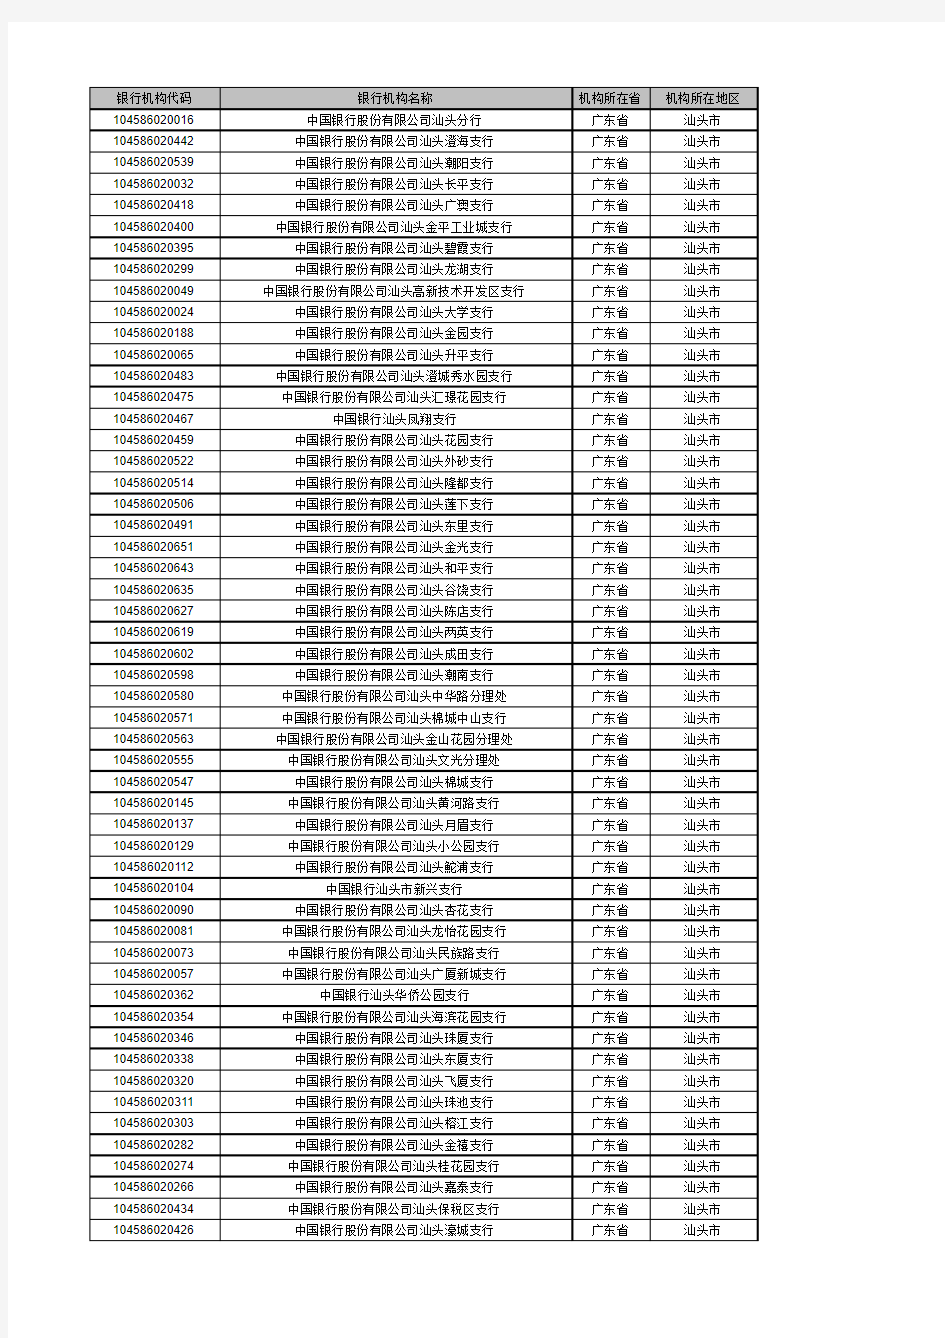 中国银行-银行机构代码表-银行联行行号(汕头)